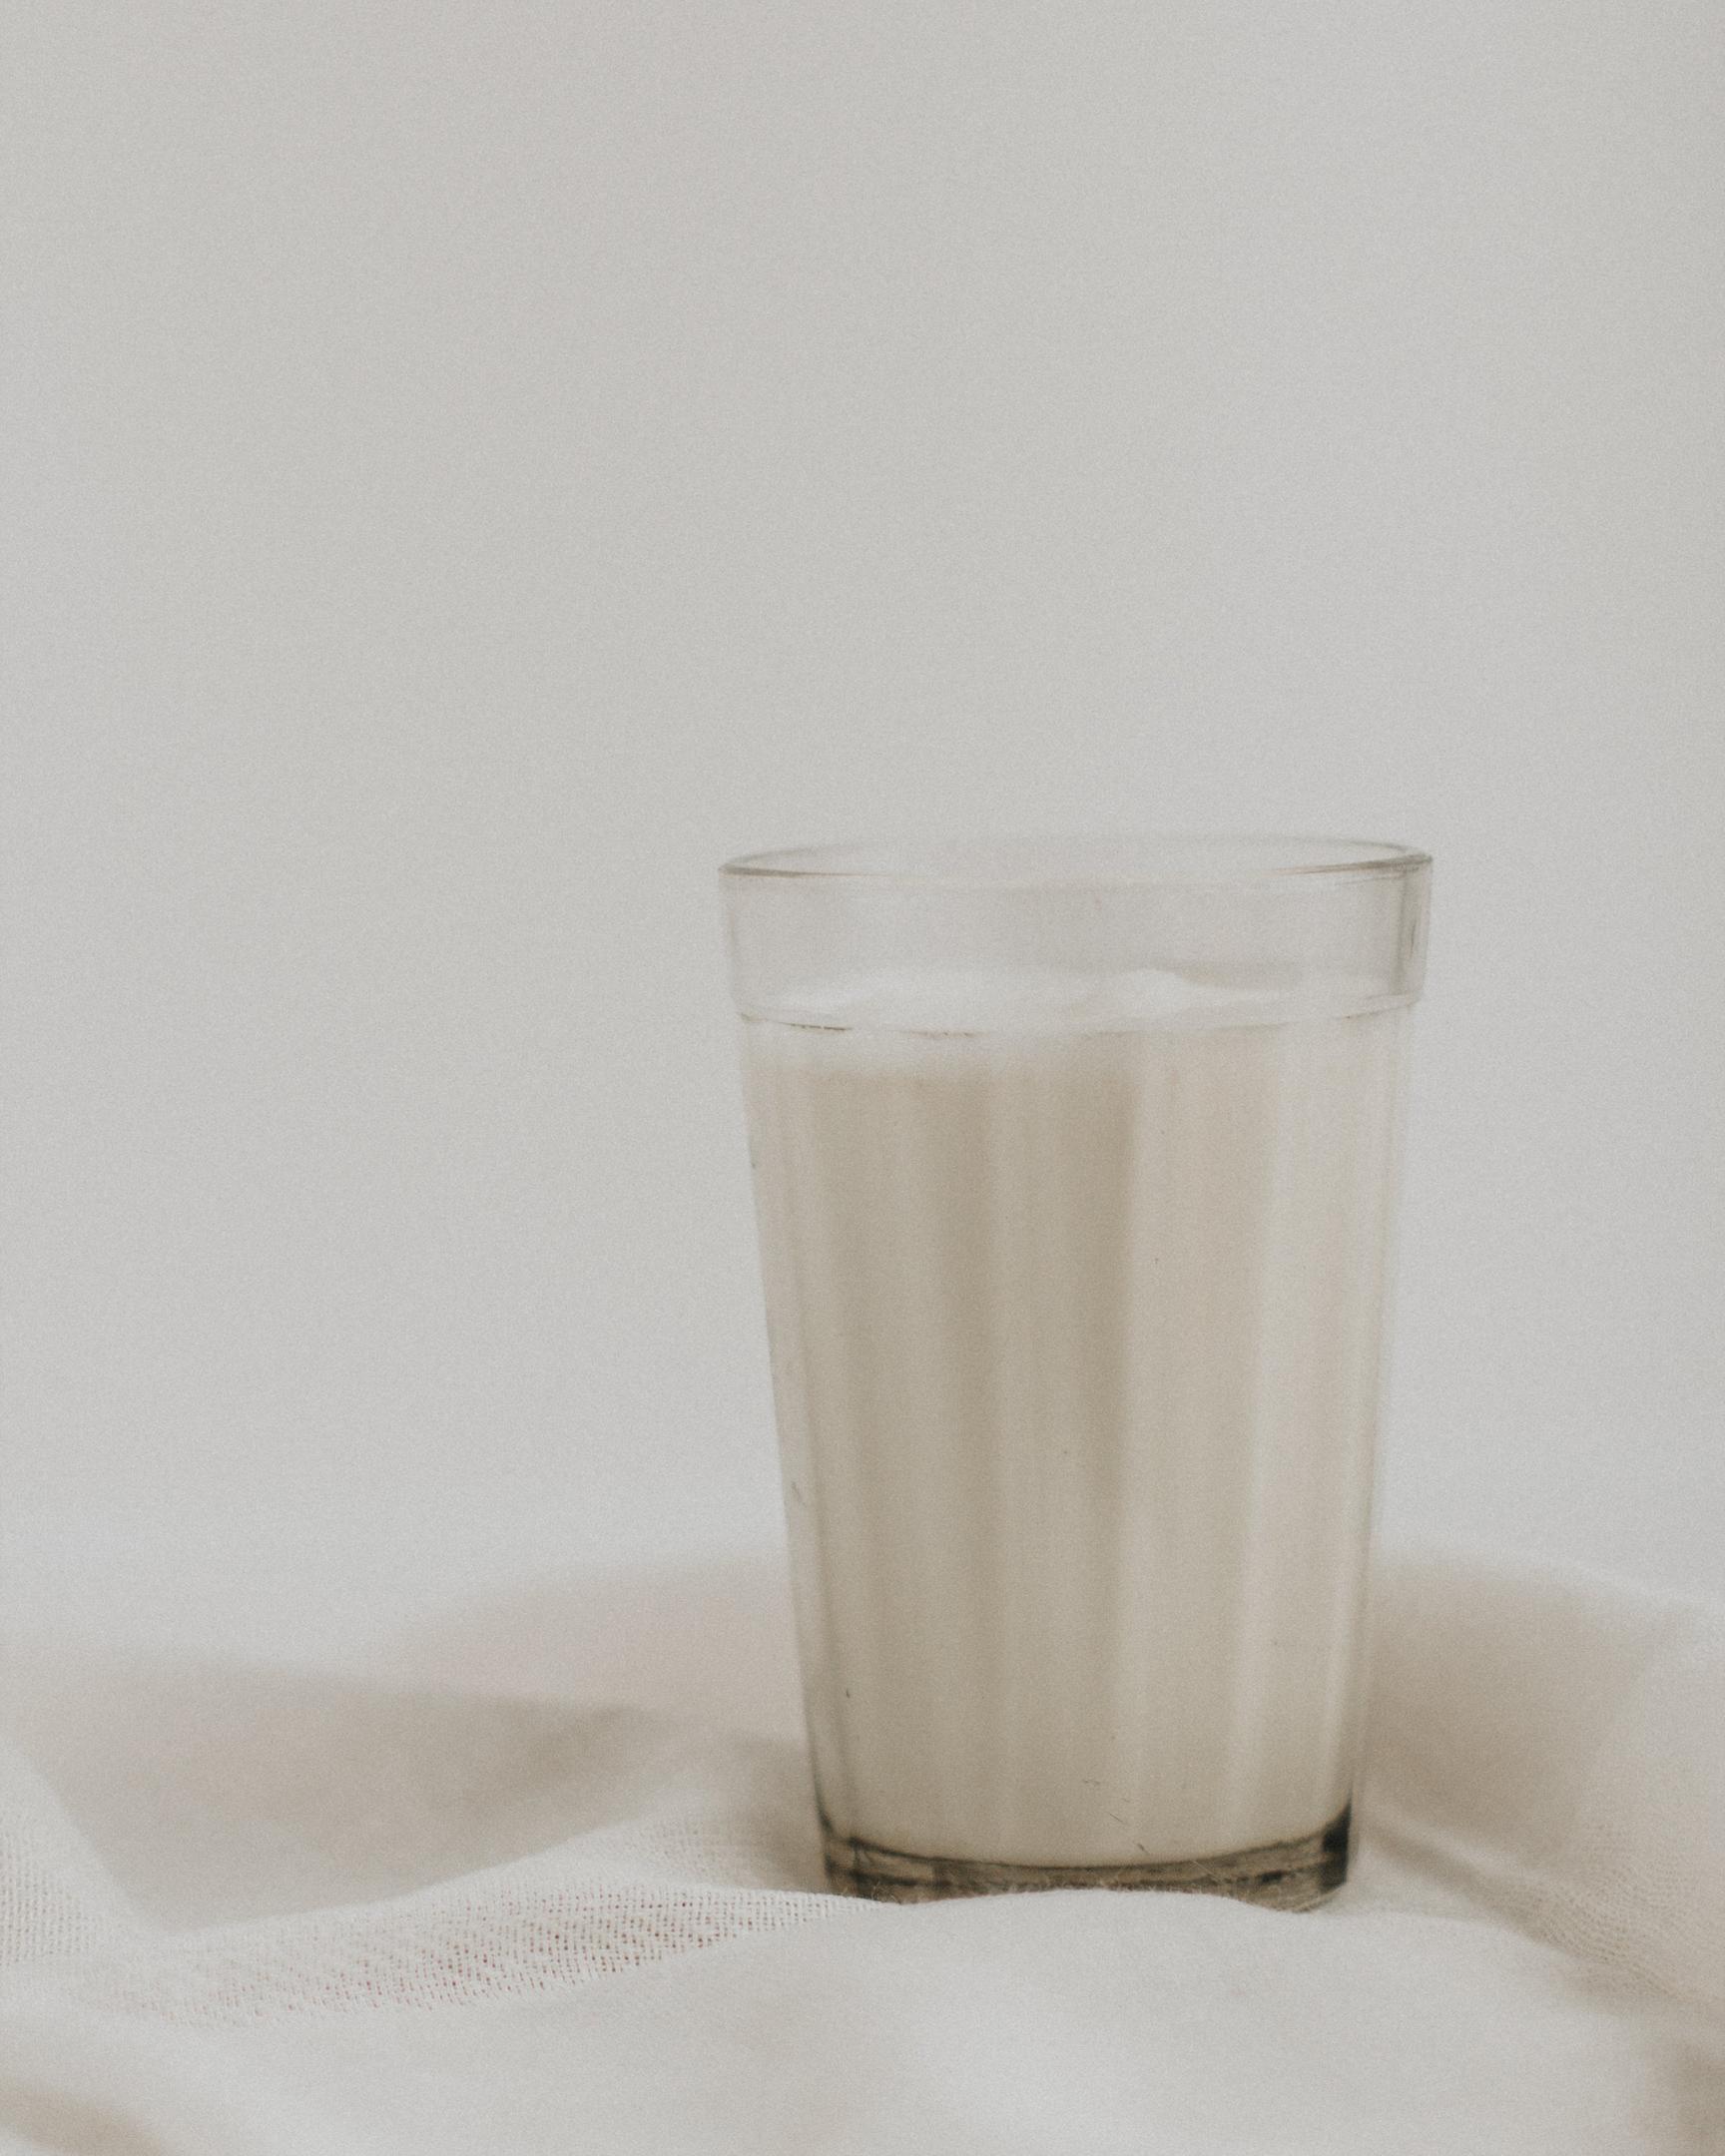 Come integrare lo yogurt senza lattosio nella dieta quotidiana